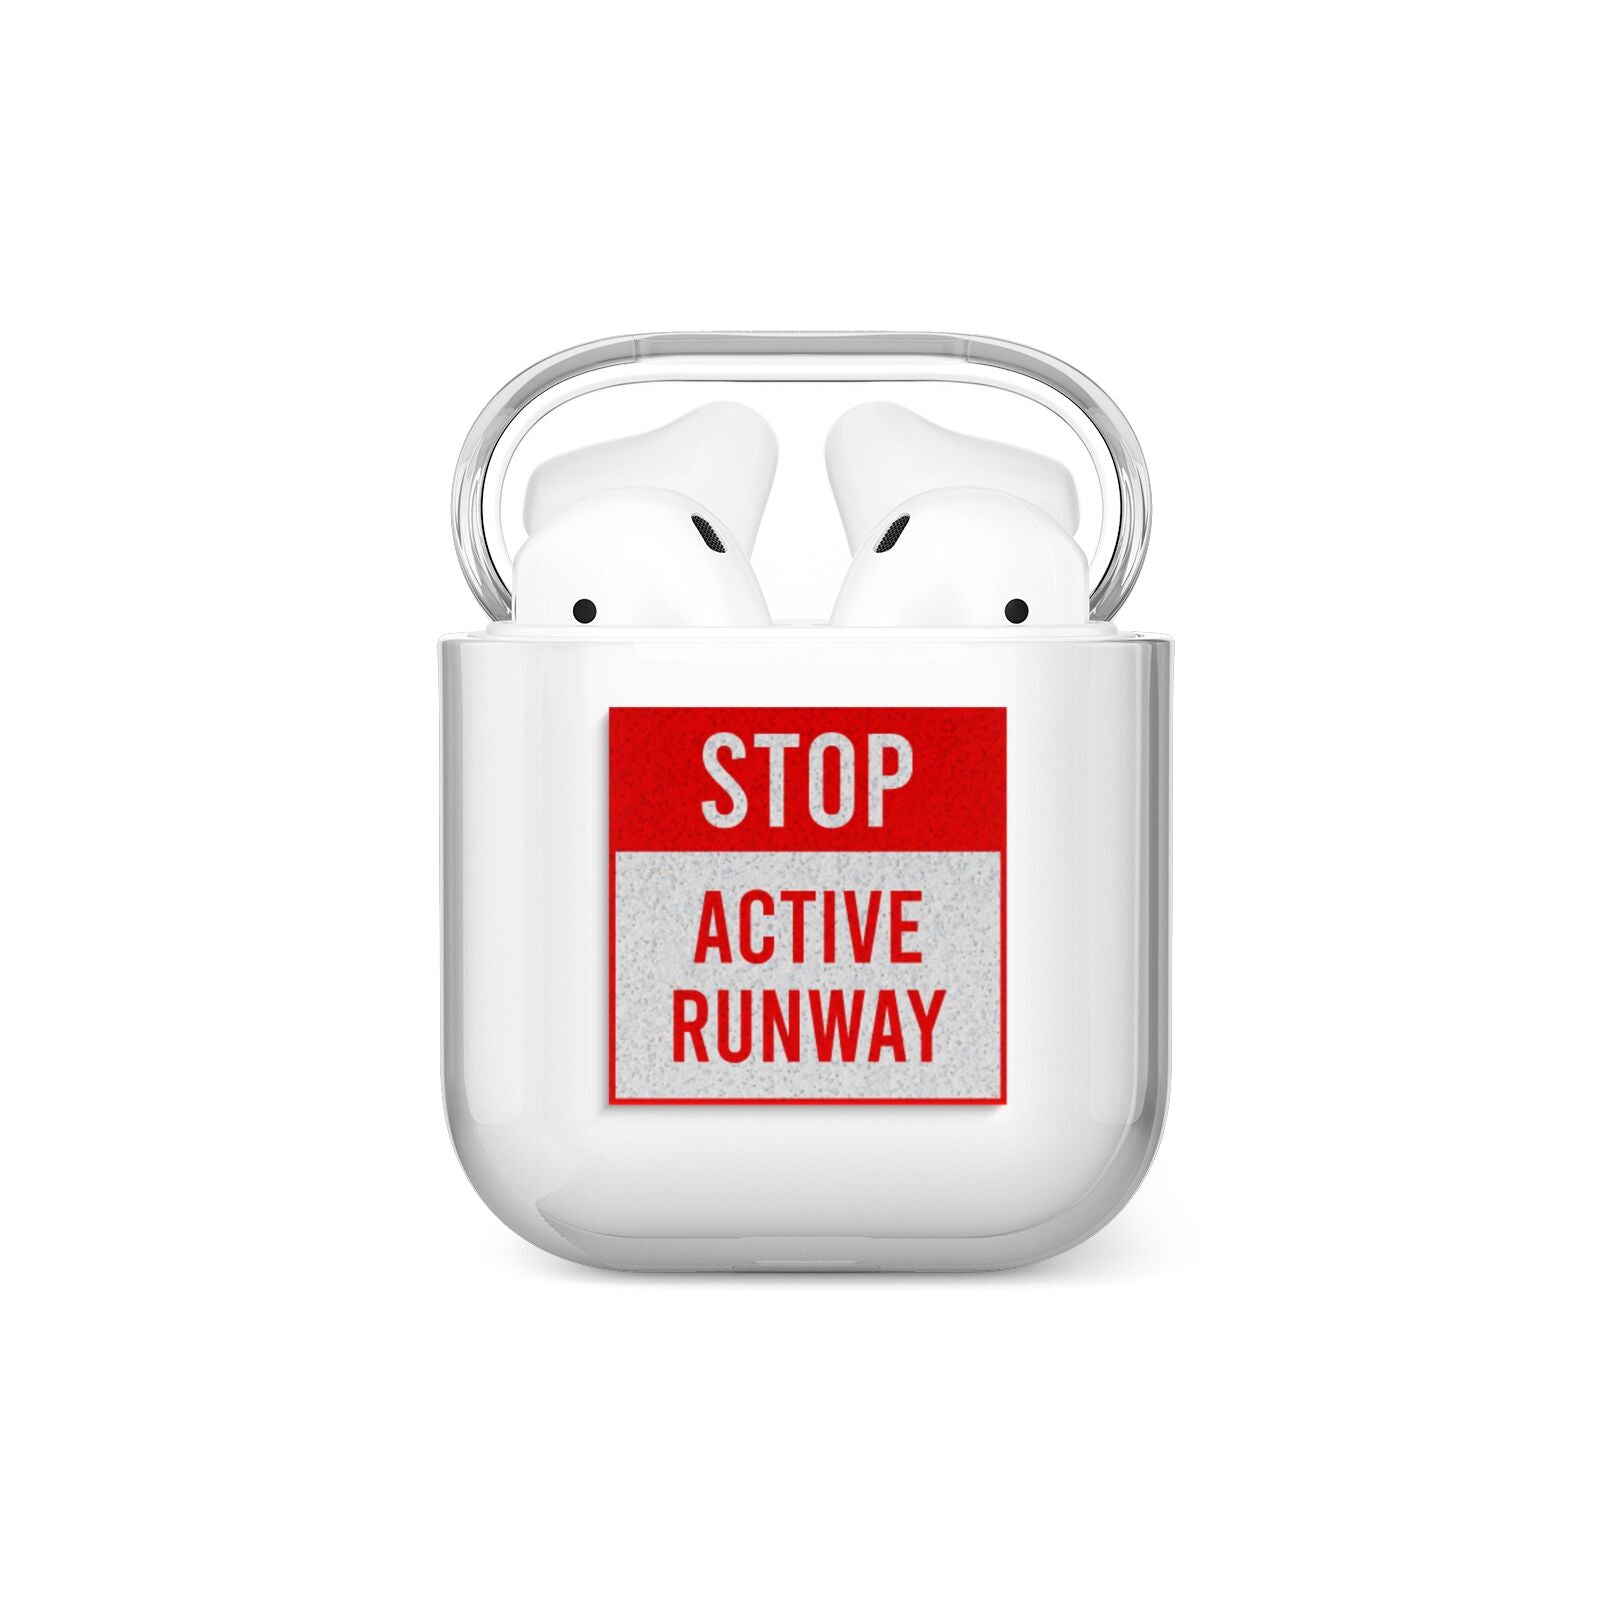 Stop Active Runway AirPods Case